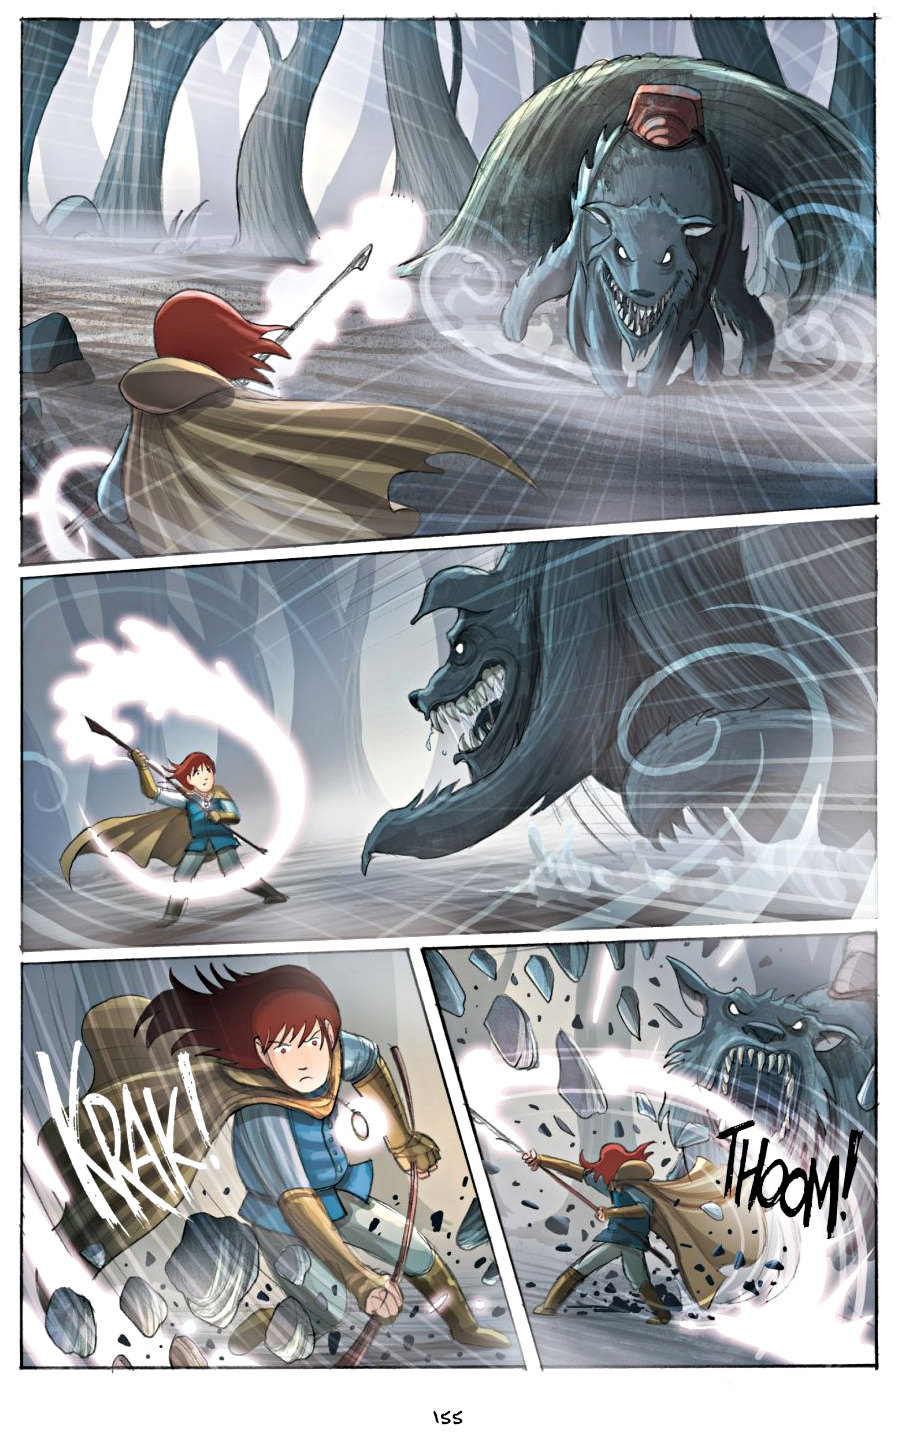 page 155 of amulet 2 stonekeeper's curse graphic novel by kazu kibuishi